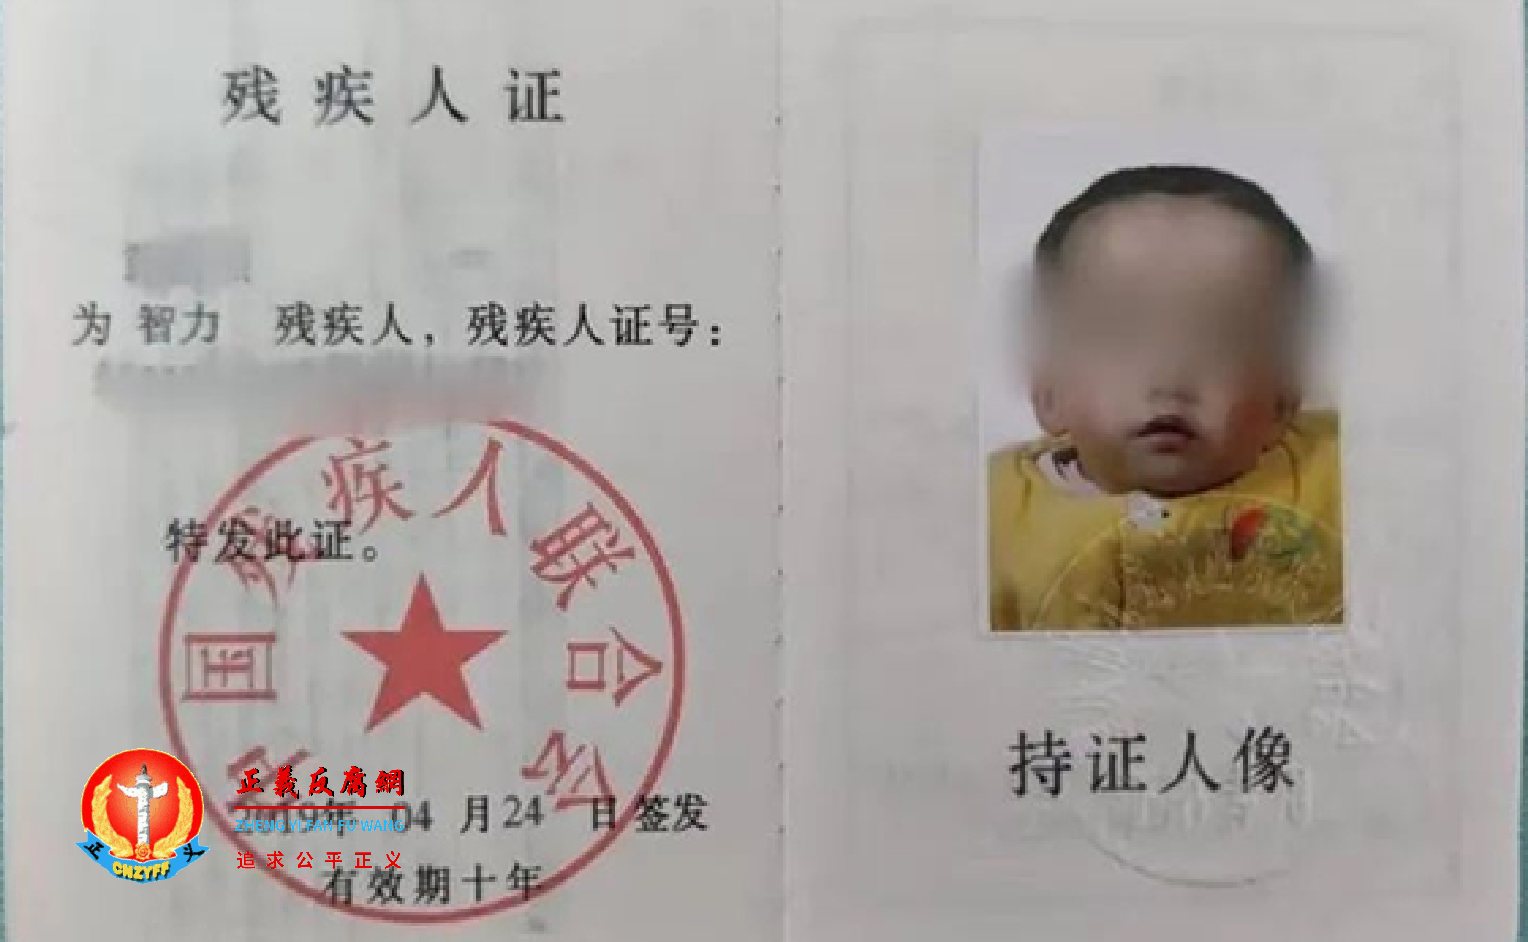 重庆居民黄先生的女儿被鉴定为智力二级残疾.png